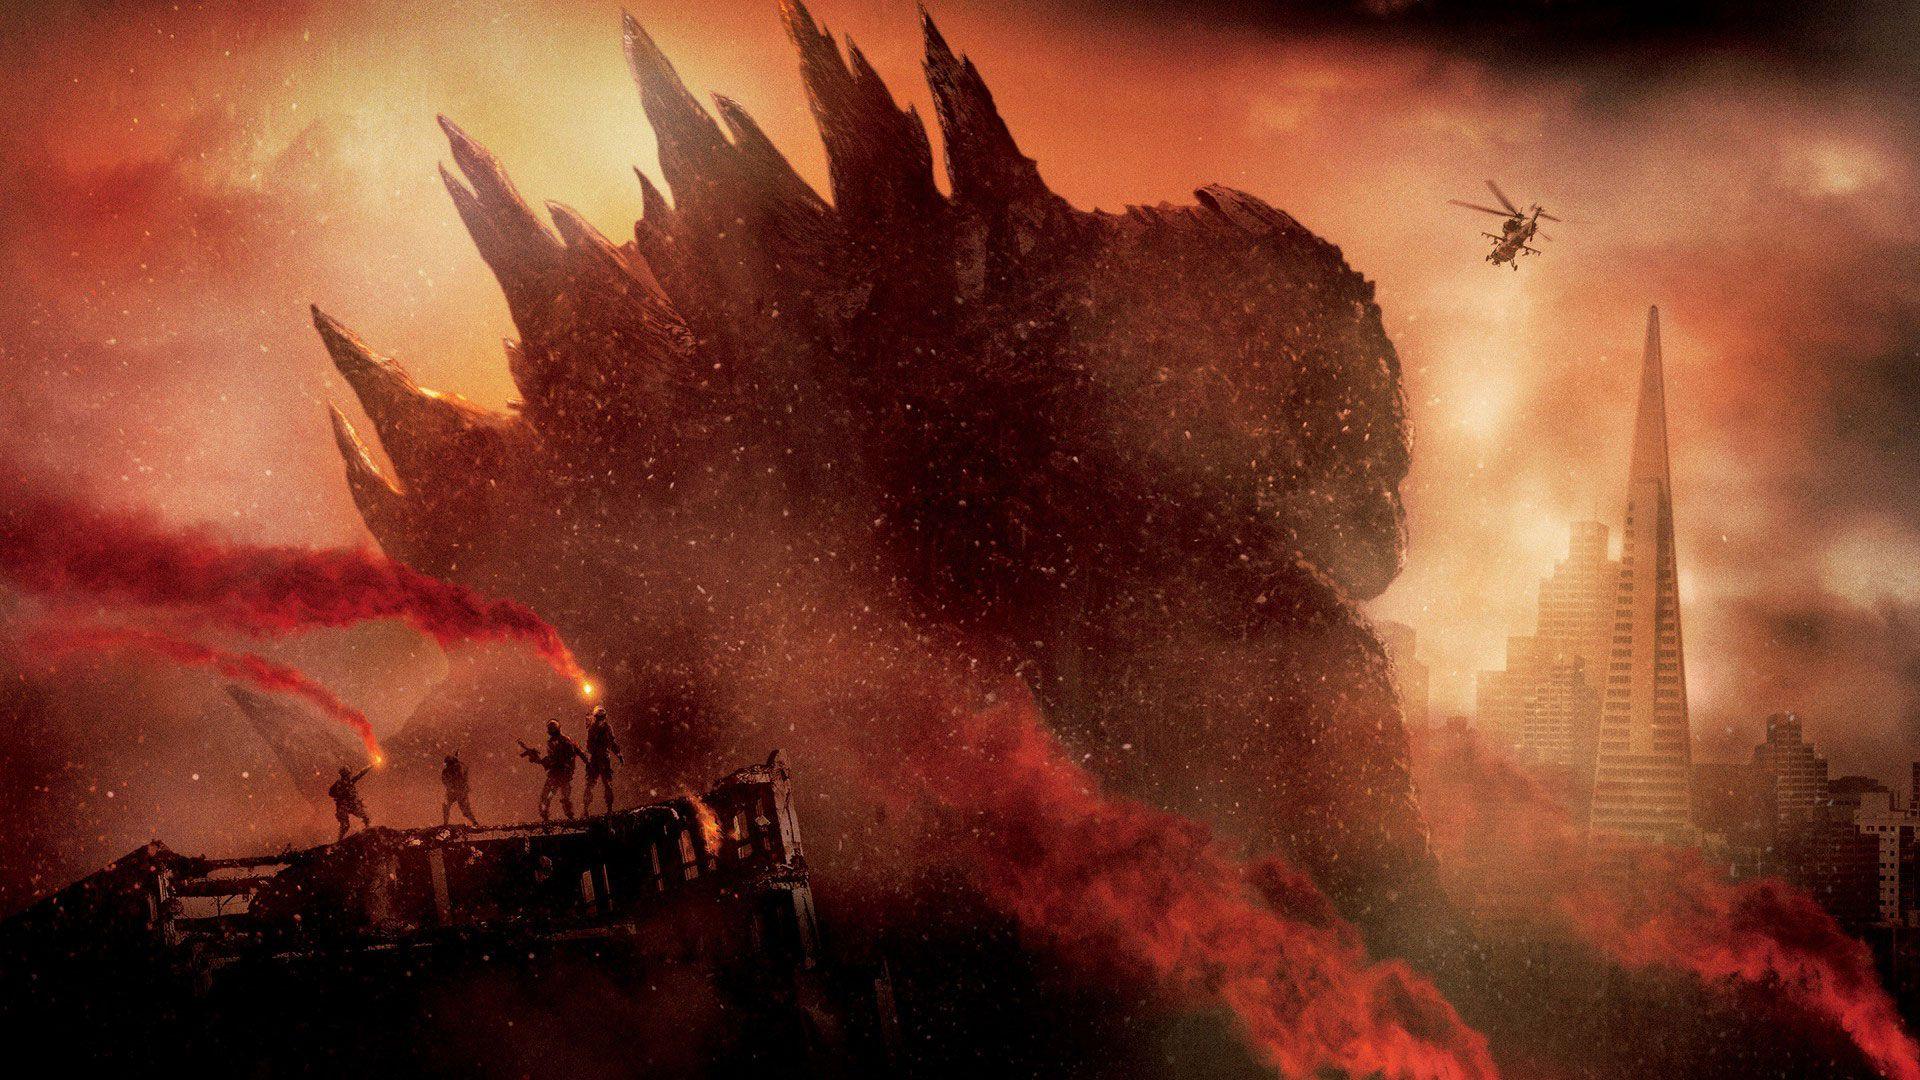 Godzilla Wallpapers, 100% Quality Godzilla HD Wallpapers High